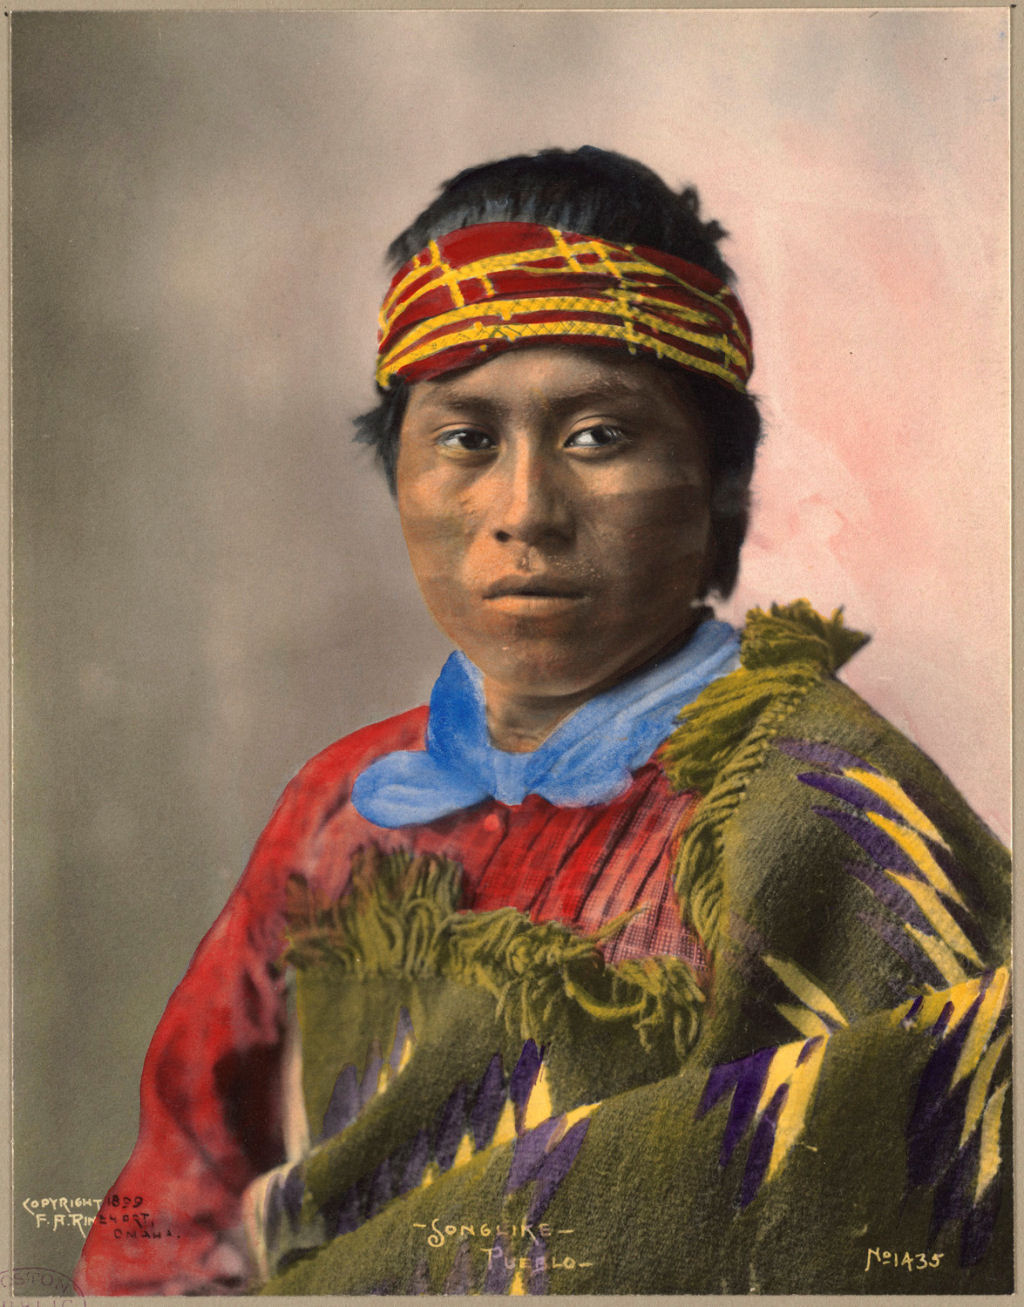 Impressionantes fotos históricas coloridas de nativos americanos do final do século 19 e início do século 20 32